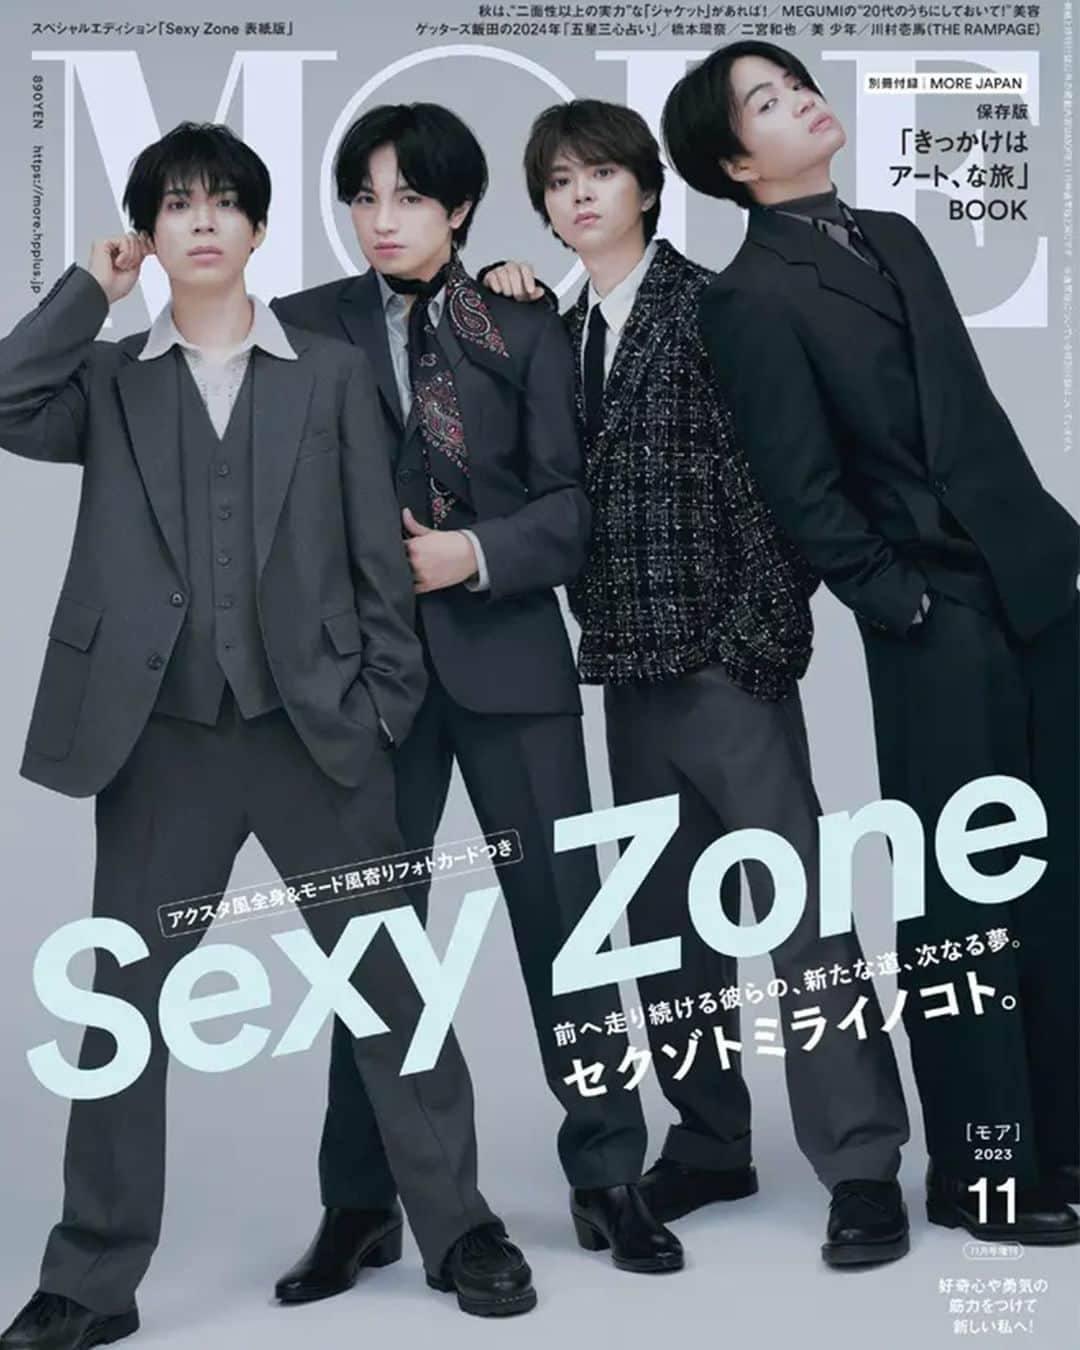 MOREのインスタグラム：「Sexy Zoneがスペシャルエディション版の表紙に！ 【『MORE』11月号 好評発売中】  好評発売中の『MORE』11月号では、通常版の表紙は橋本環奈さんが、スペシャルエディション版の表紙はSexy Zoneが飾っています✨  Sexy Zoneは、初表紙を飾った「MORE」2020年9月号から数えて4回目の表紙登場。この11月号では、2019年4月号からスタートしたSexy Zoneの連載『セクゾトイロハニホヘト。』が最終回を迎えることから、全12ページの特集を企画しました。過去の連載の中から「オレ的神回」を紹介するページ、連載での名言や各々の解説を交え、一人ひとりの魅力をクローズアップするページ、そして4人全員で連載の想い出を話す座談会ページを収録しています。  MORE11月号、ぜひ店頭でチェックしてくださいね！  ※表紙と特別付録以外の内容は、通常版・スペシャルエディション版ともに同じです  #MORE #SZ #菊池風磨 #中島健人 #松島聡 #佐藤勝利 #橋本環奈 #kannahashimoto #THERAMPAGE #川村壱馬 #MEGUMI #二宮和也 #美少年 #八木莉可子 #ゲッターズ飯田 #付録 #本田翼 #井桁弘恵 #川口ゆりな #飯豊まりえ #内田理央 #新川優愛 #鈴木友菜 #土屋巴瑞季 #逢沢りな #松本愛 #江野沢愛美」